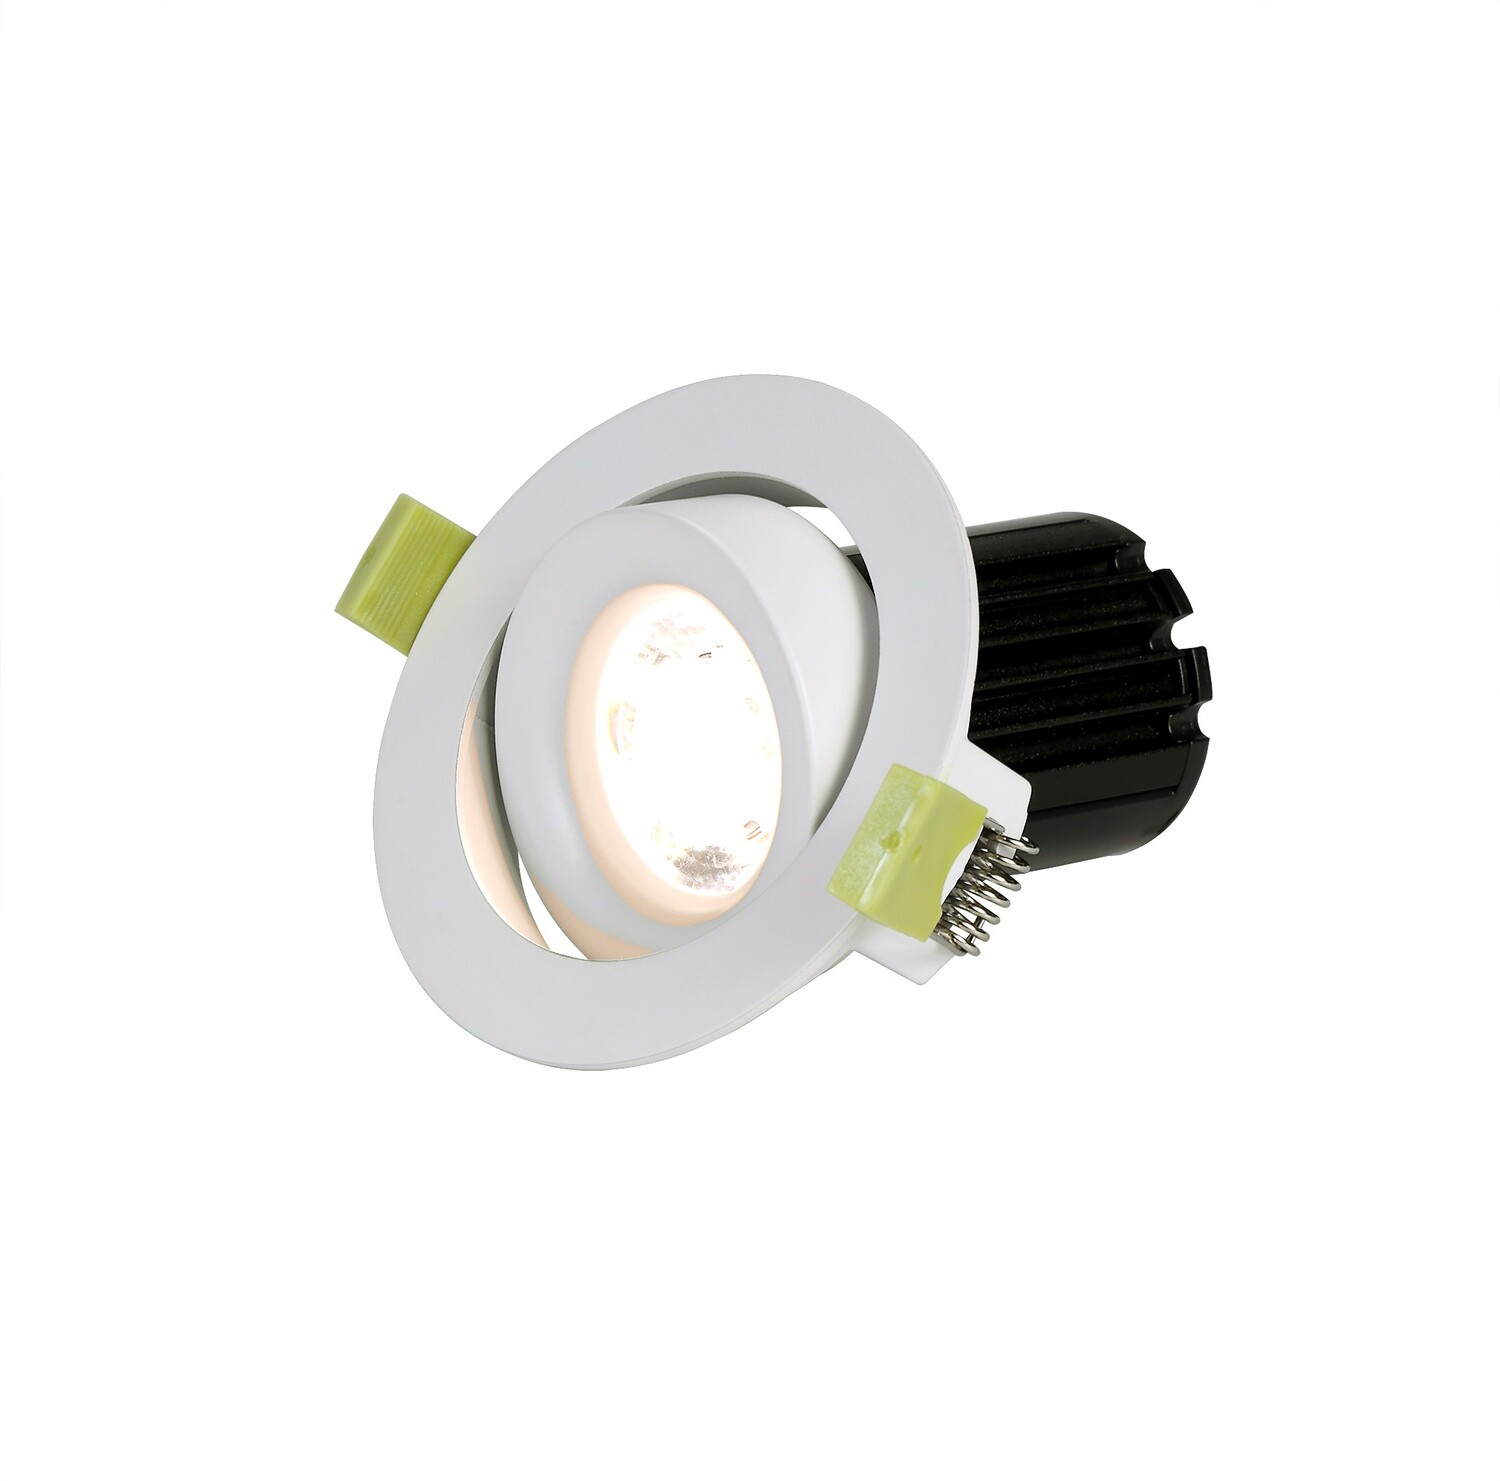 BRUVE LED adjustable Spot-light 10W 810lm White